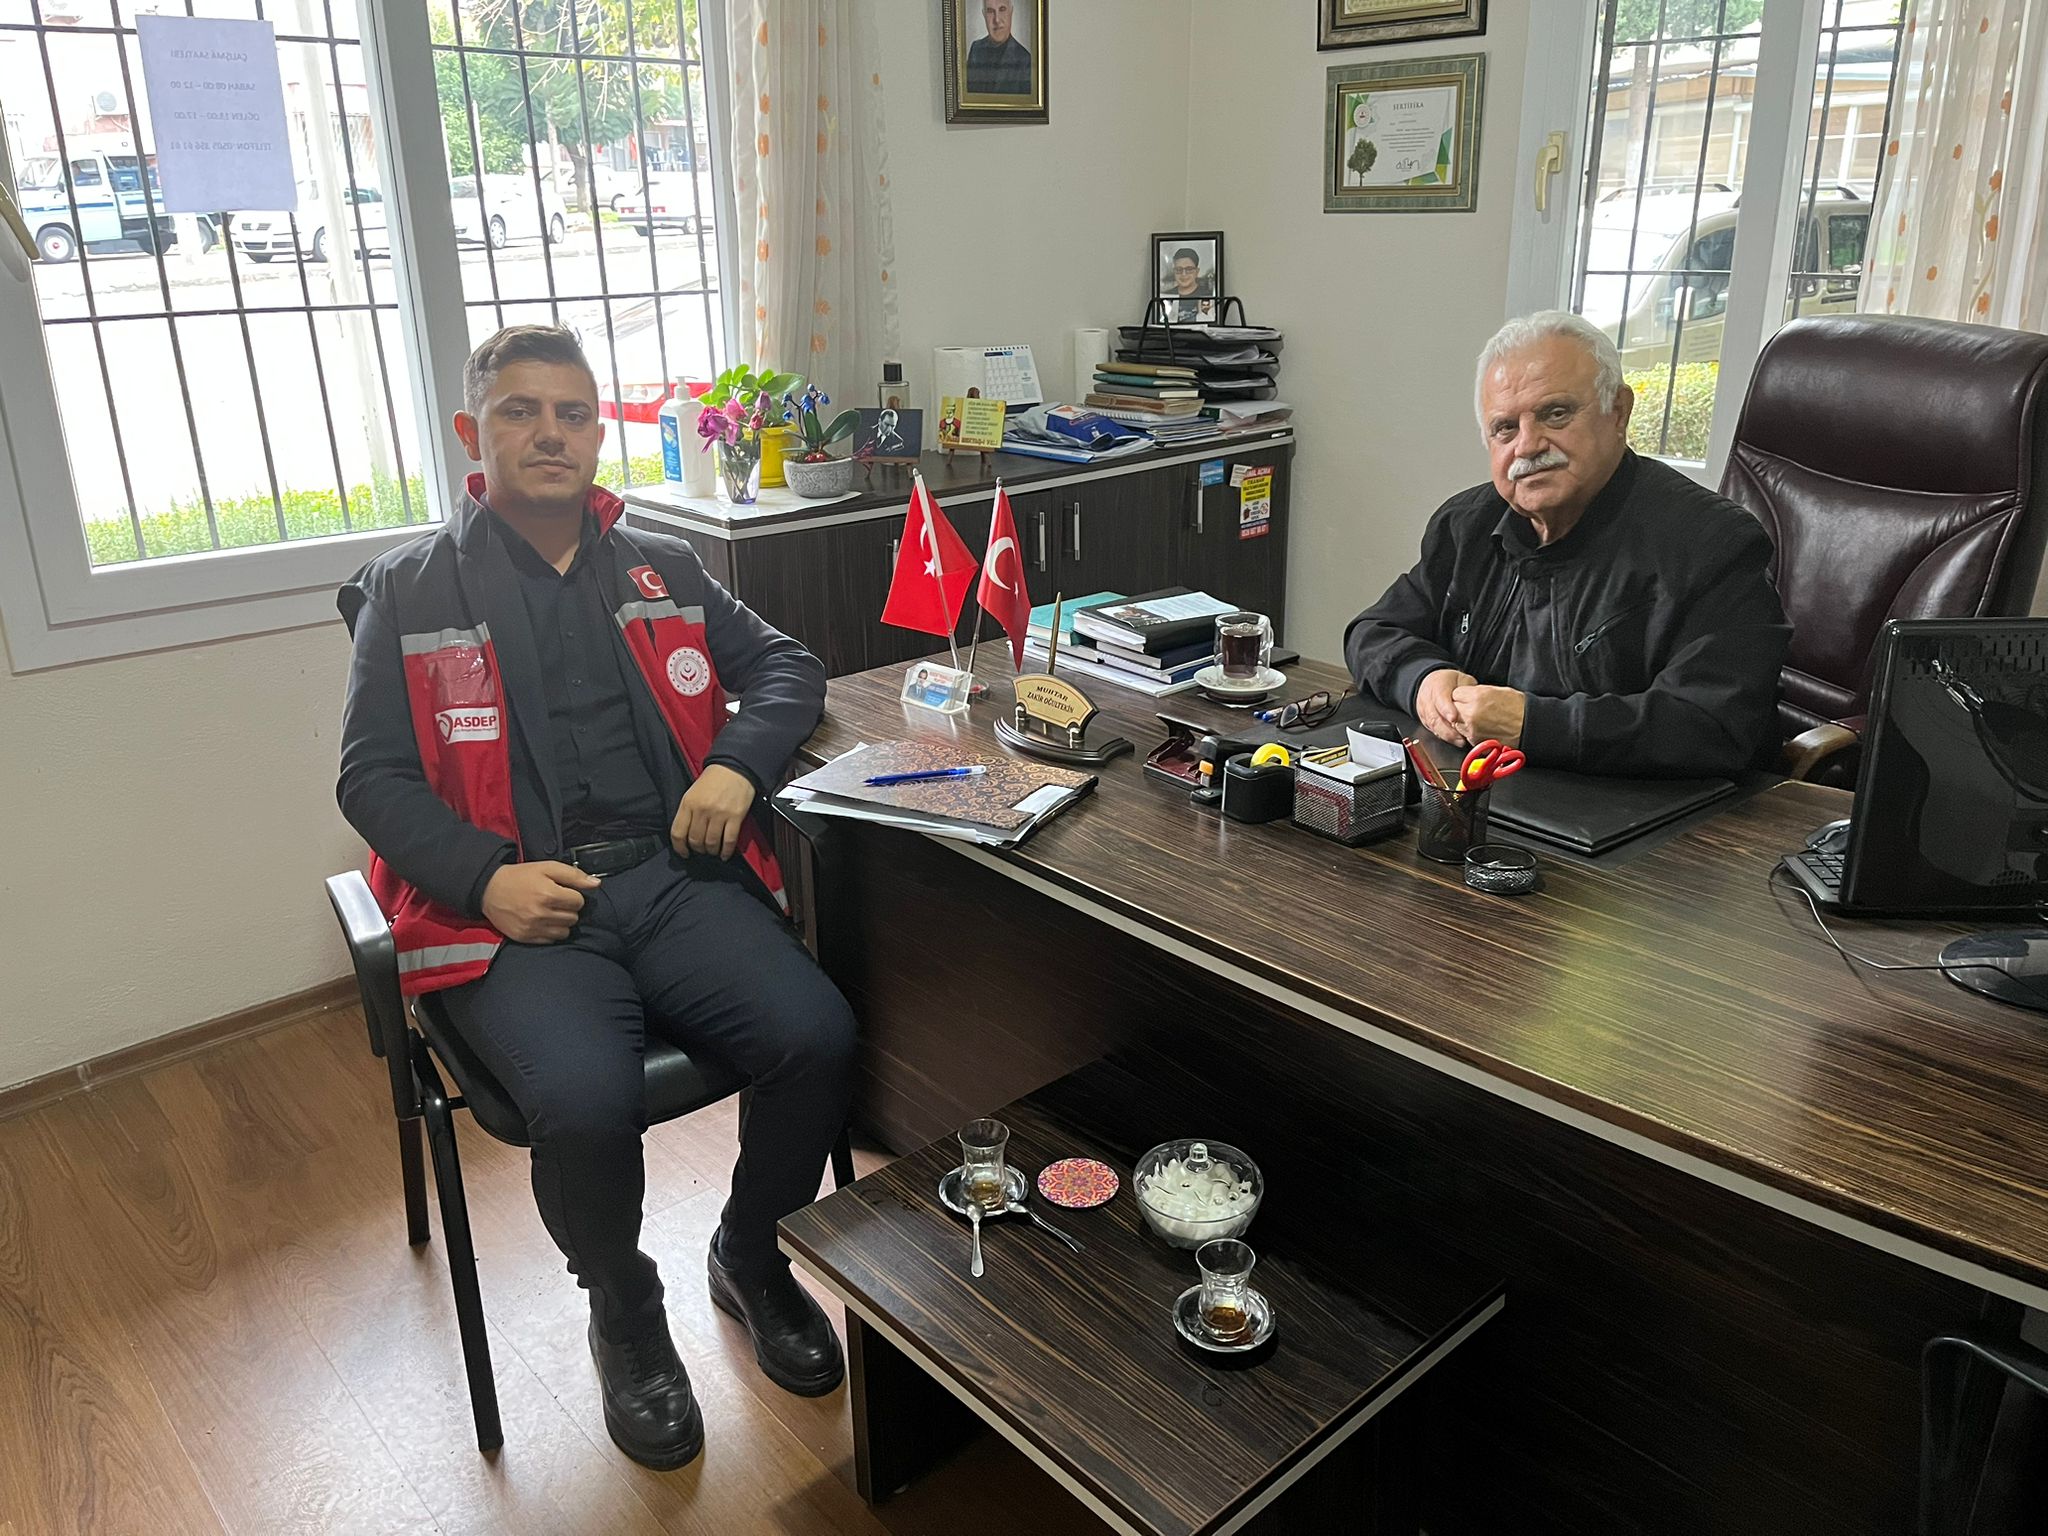 Yenişehir SHM,"Ulusal Hane Ziyaretleri" kapsamında Akkent, Eğriçam, Çiftlikköy, Gazi, Aydınlıkevler mahalle muhtarlarlıklarına ziyaret gerçekleştirmiştir.